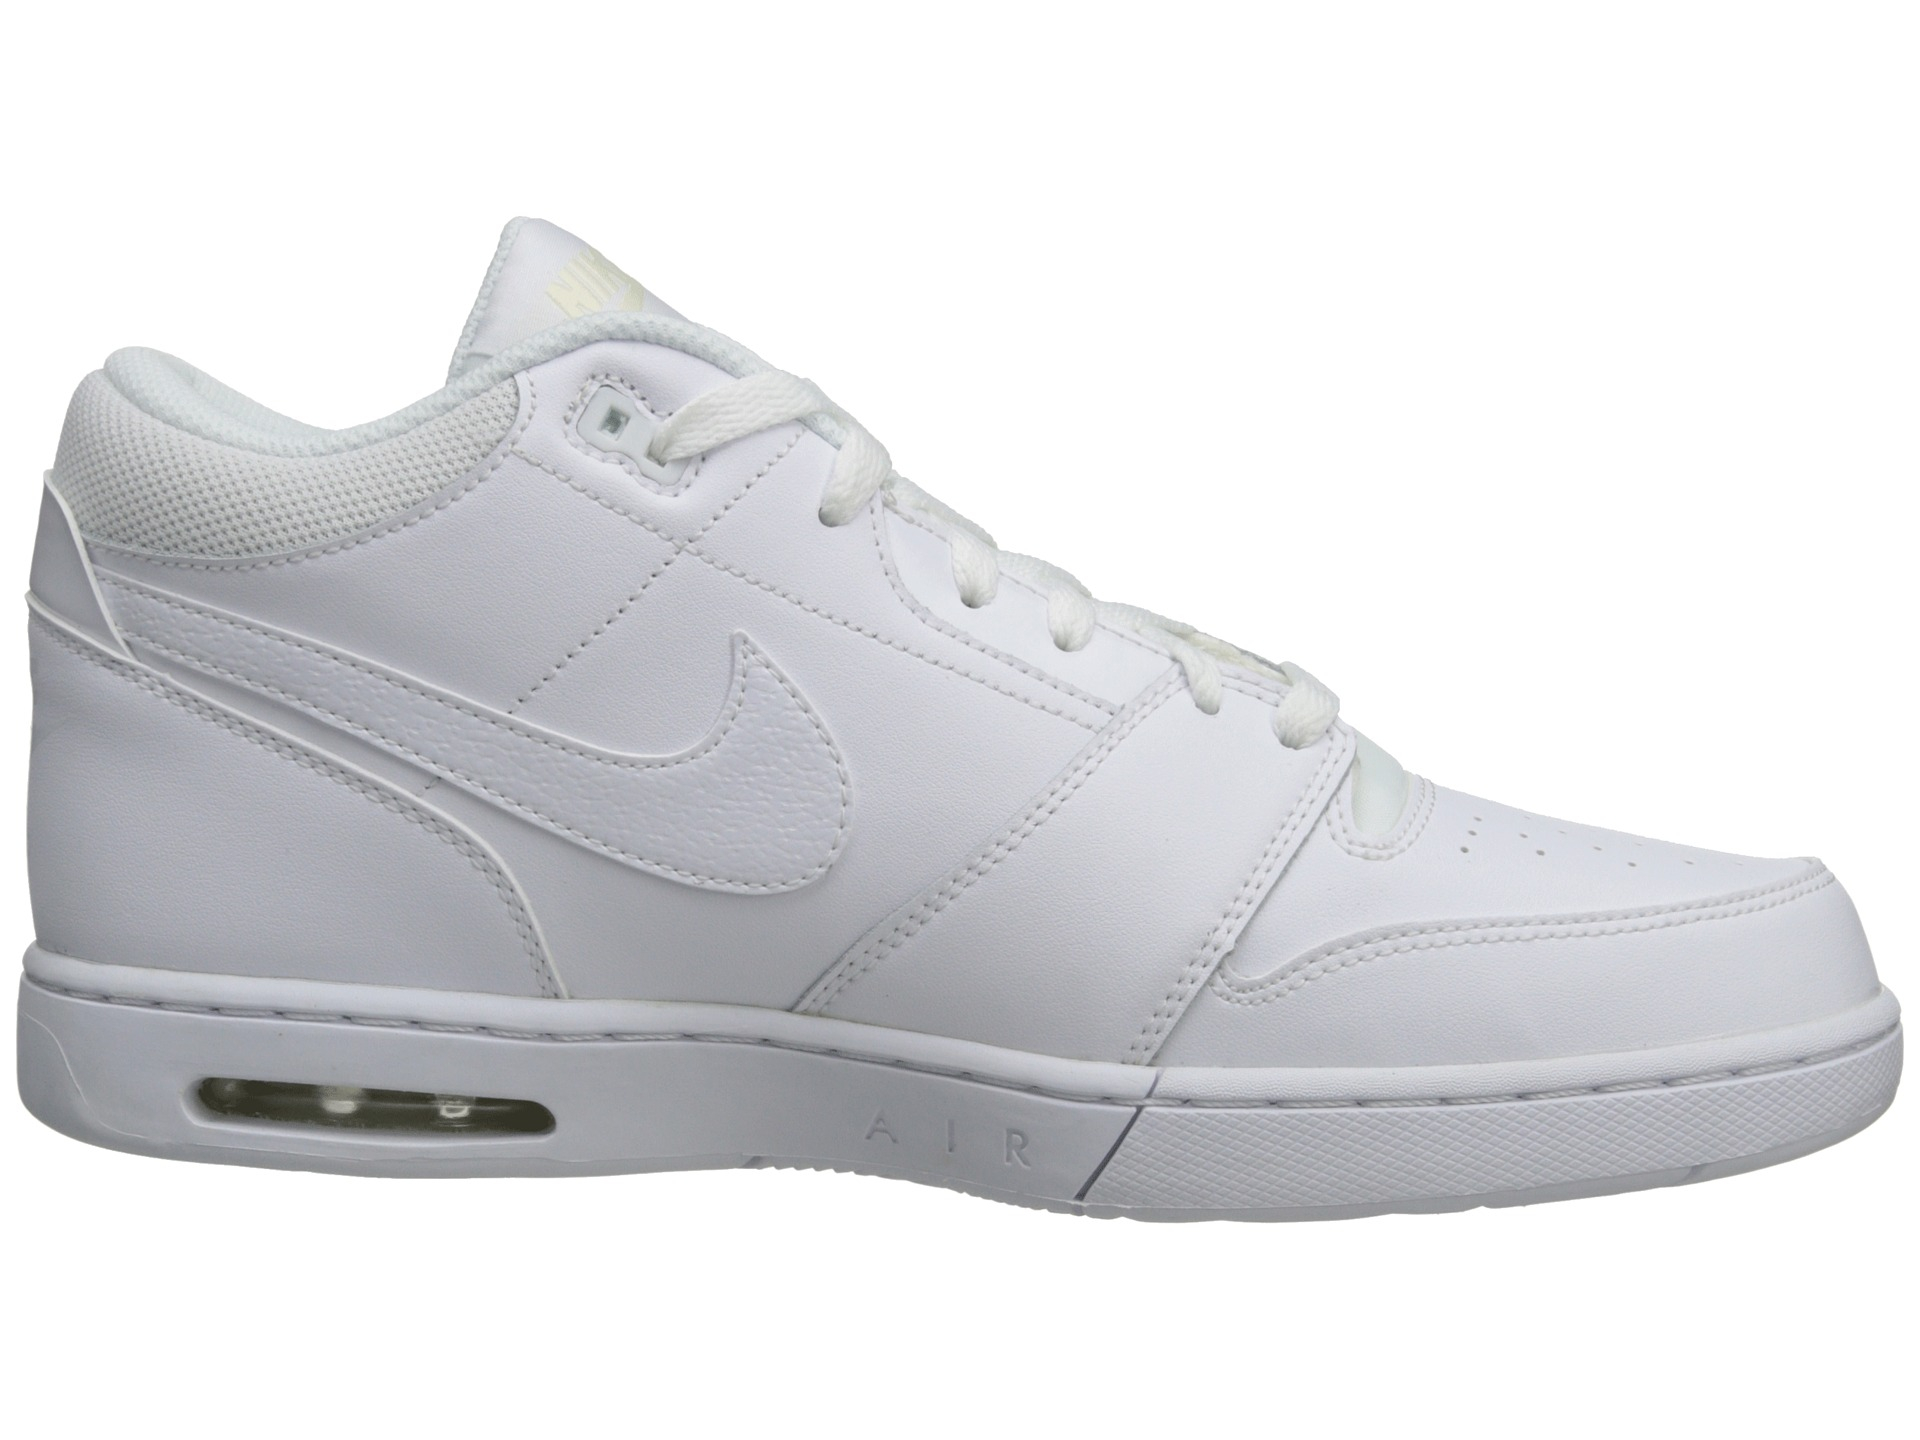 Nike Air Stepback in White/White (White) for Men - Lyst